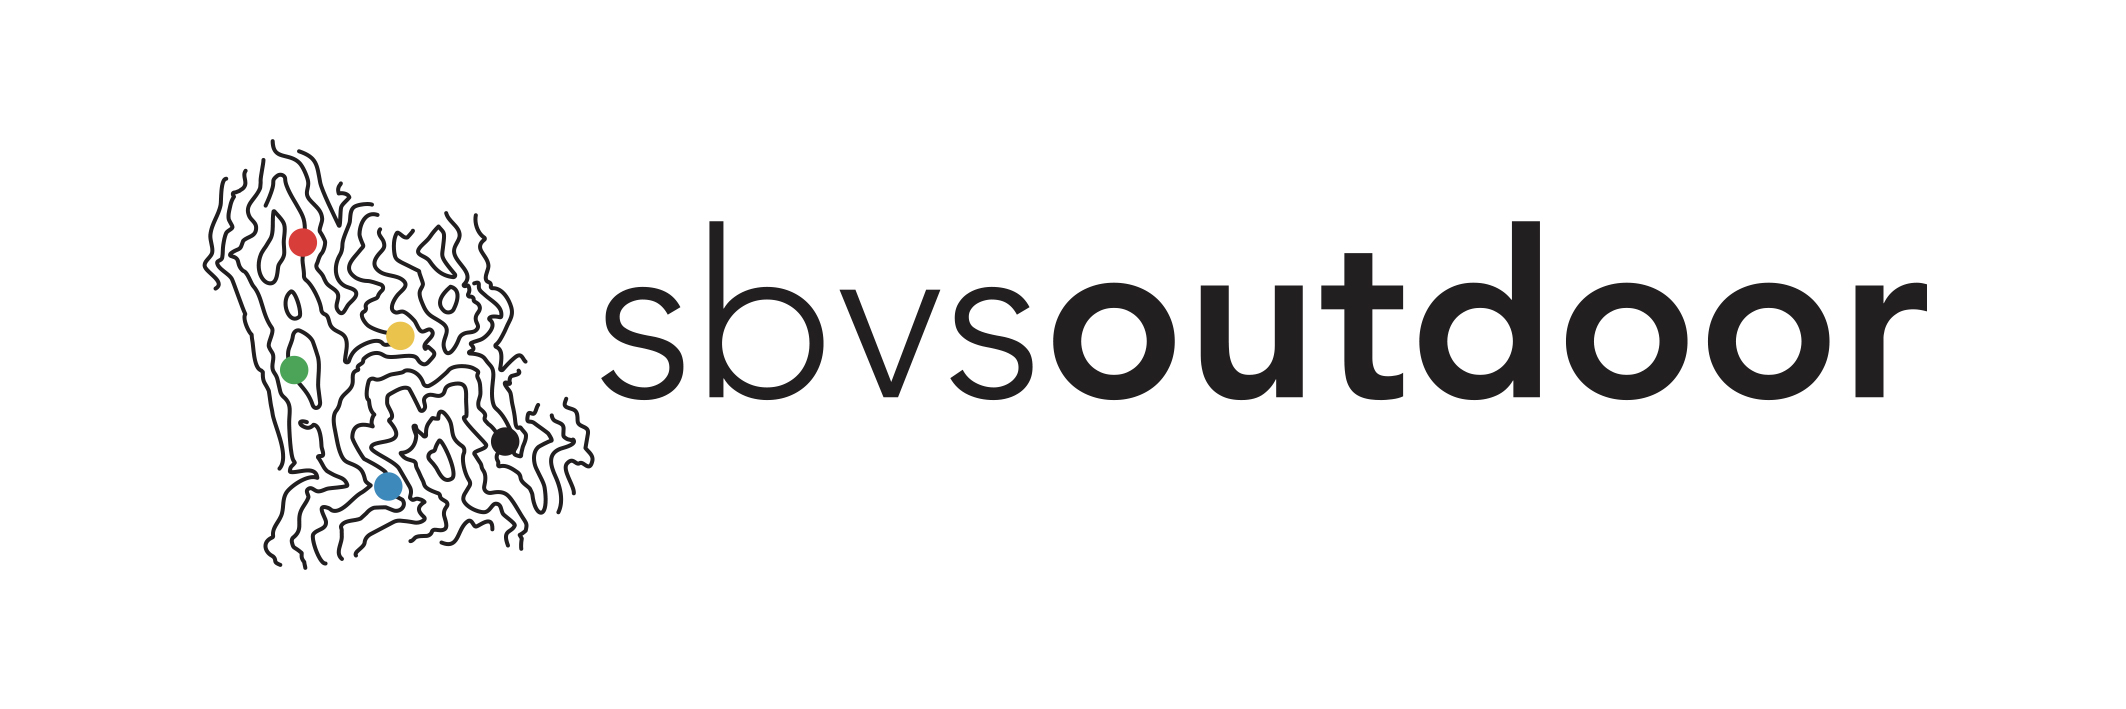  logo_sbvsoutdoor.jpg 